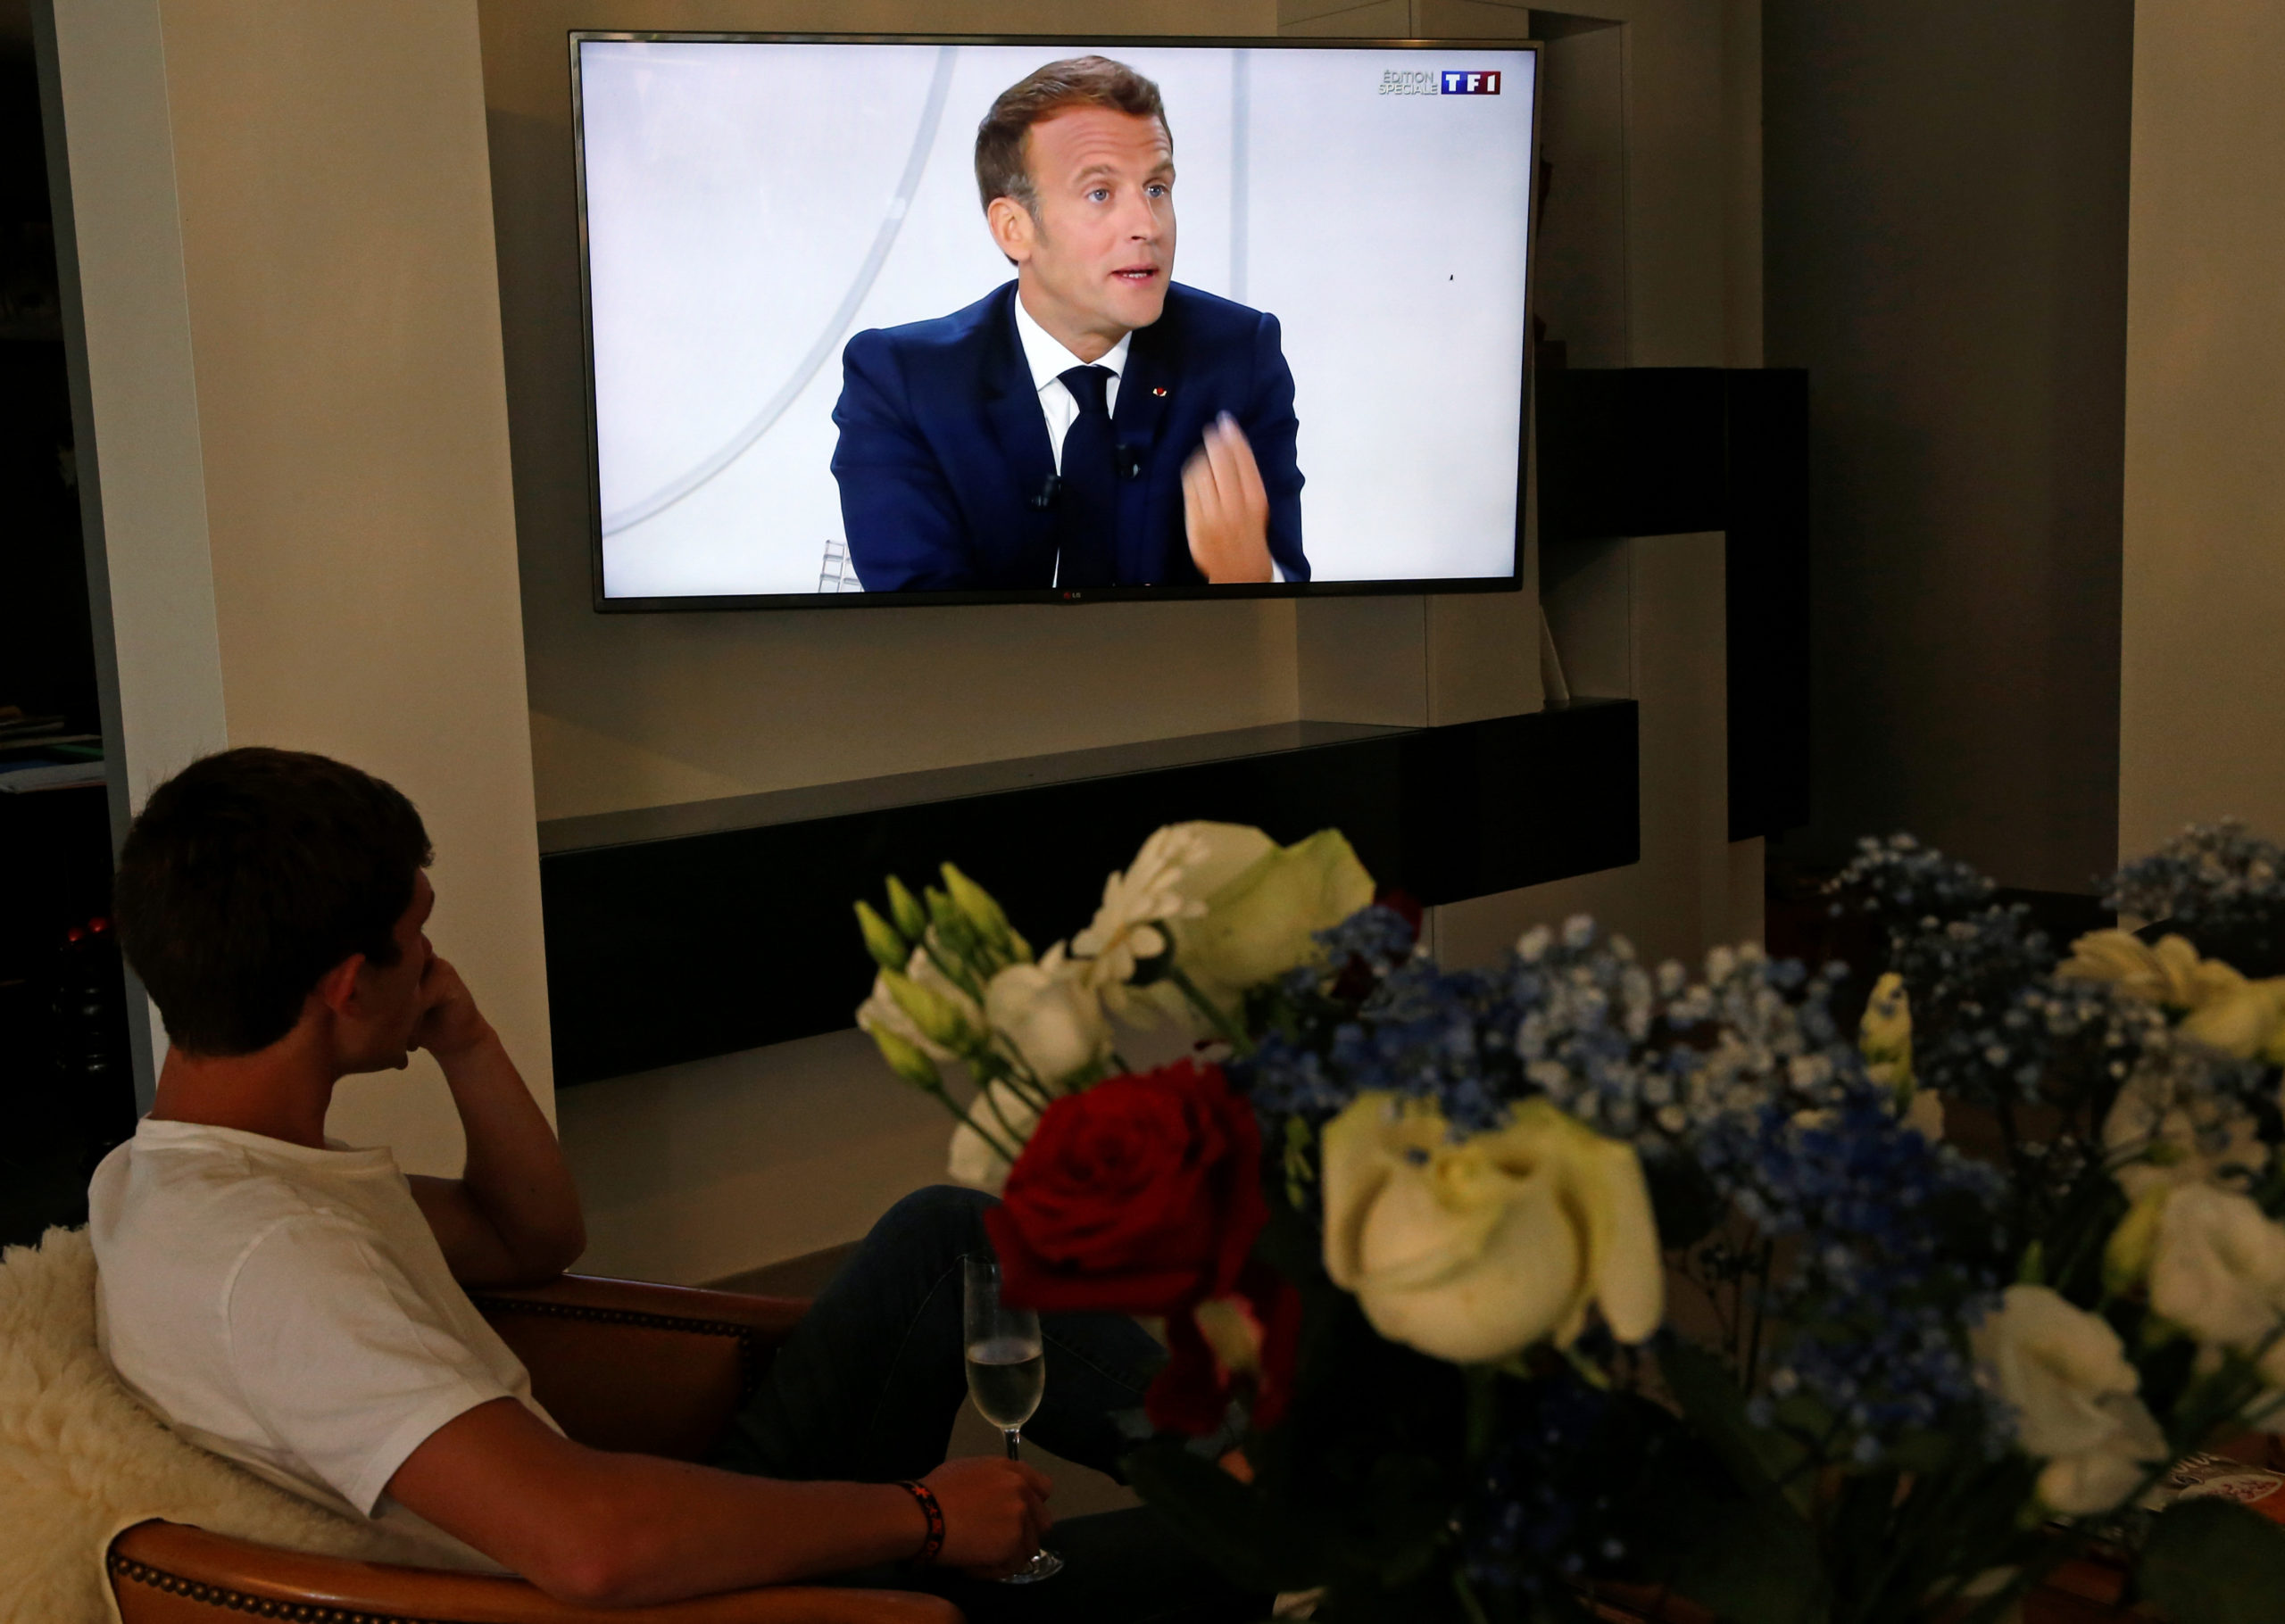 Macron veut mettre une France en crise sur un "chemin de justice"